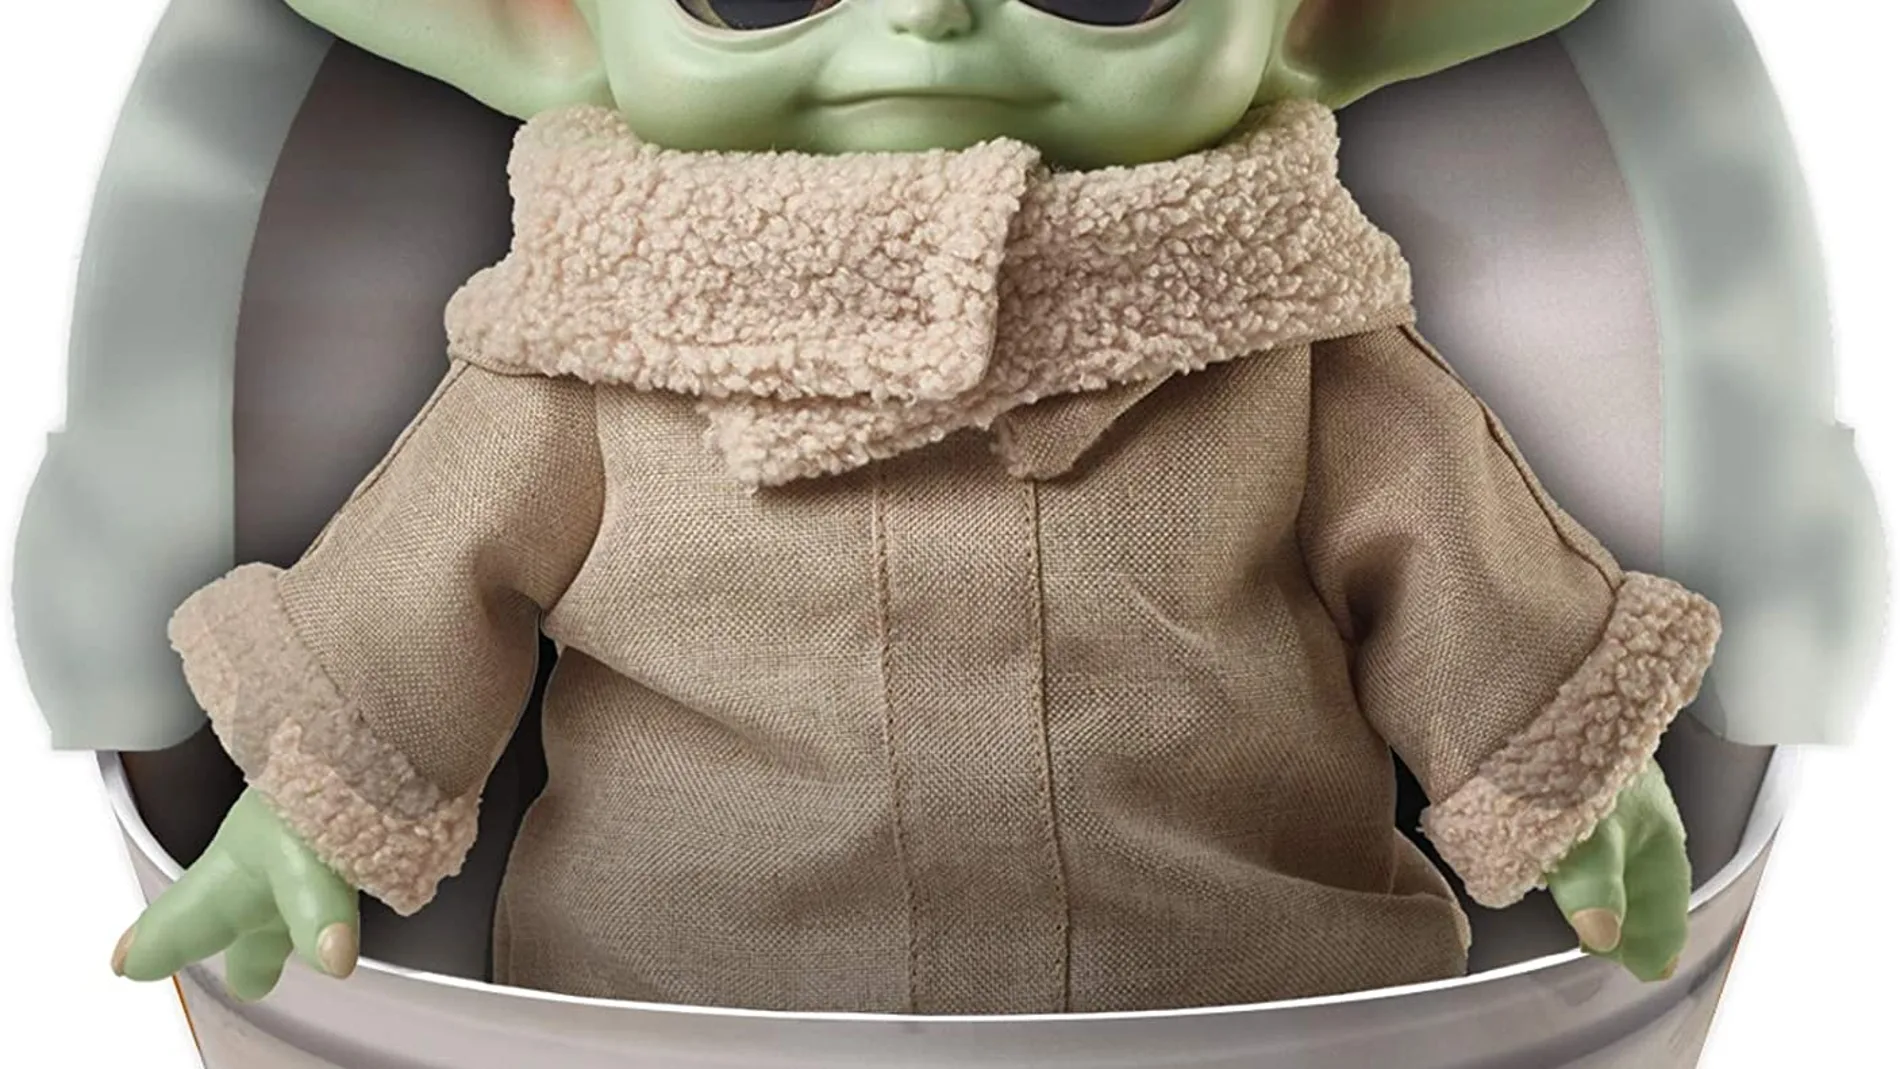 Muñeco de Baby Yoda de Star Wars, peluche de Disney más vendido